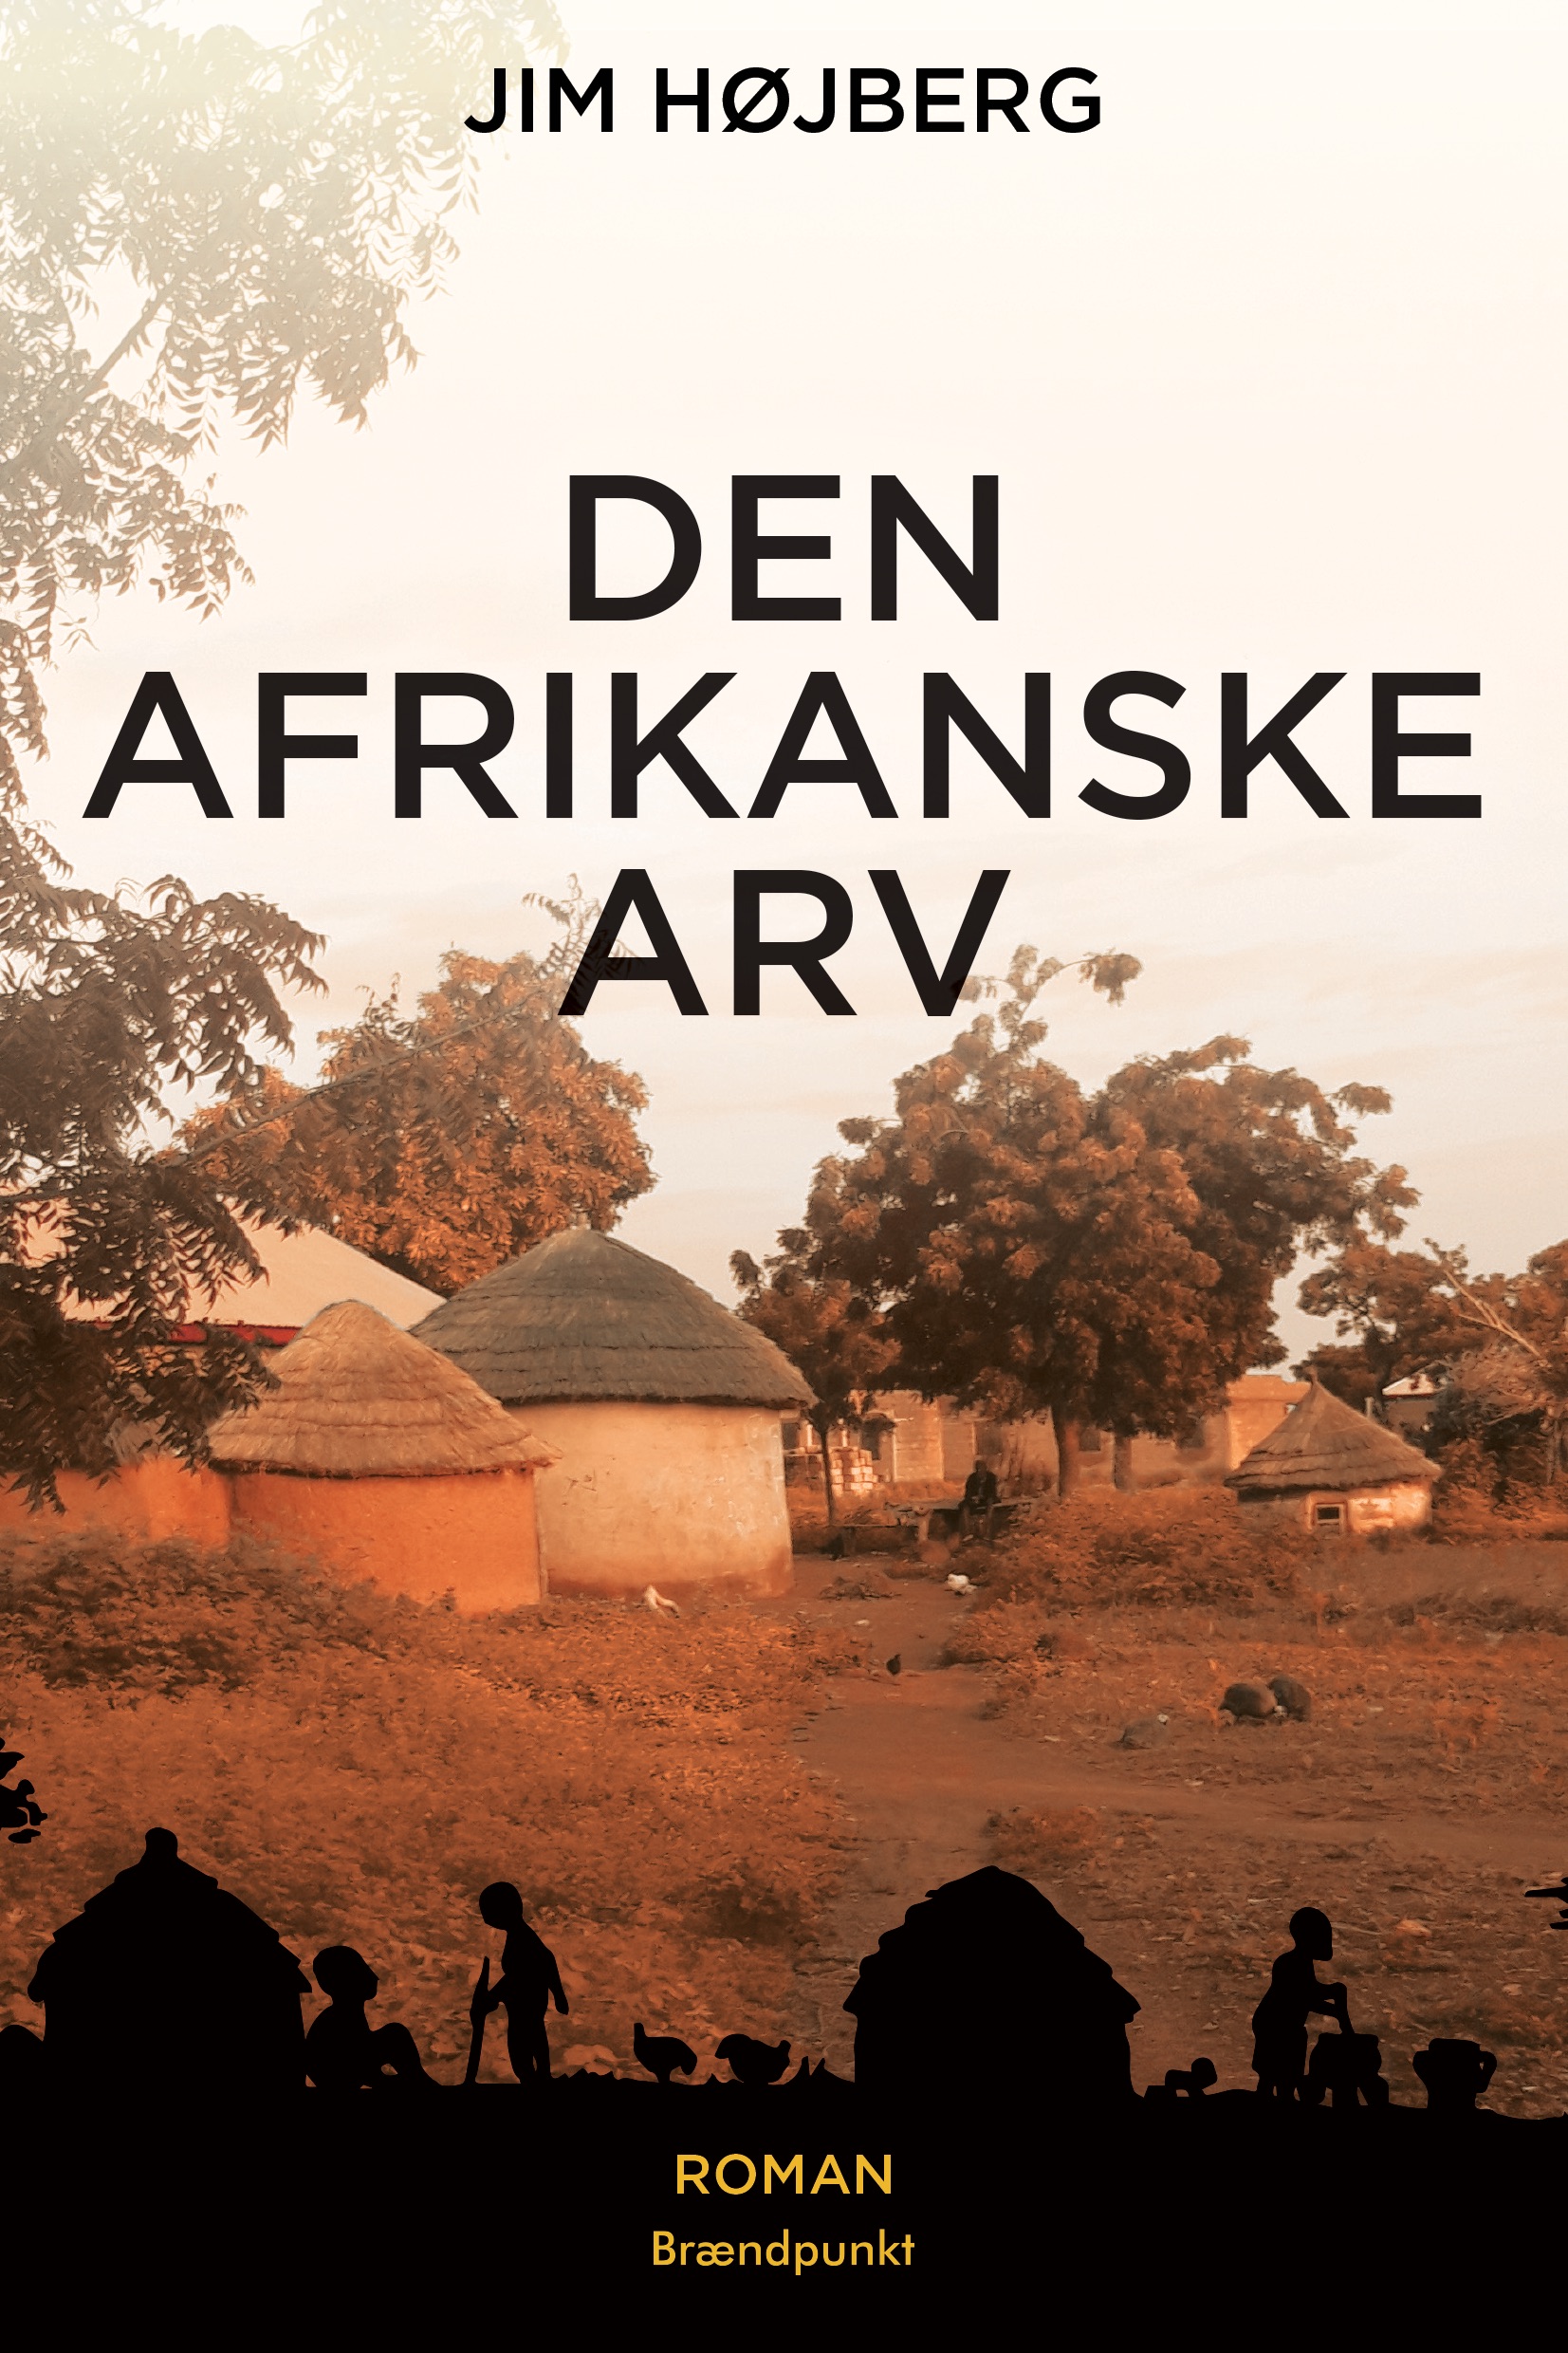 Den afrikanske arv af Jim Højberg, roman